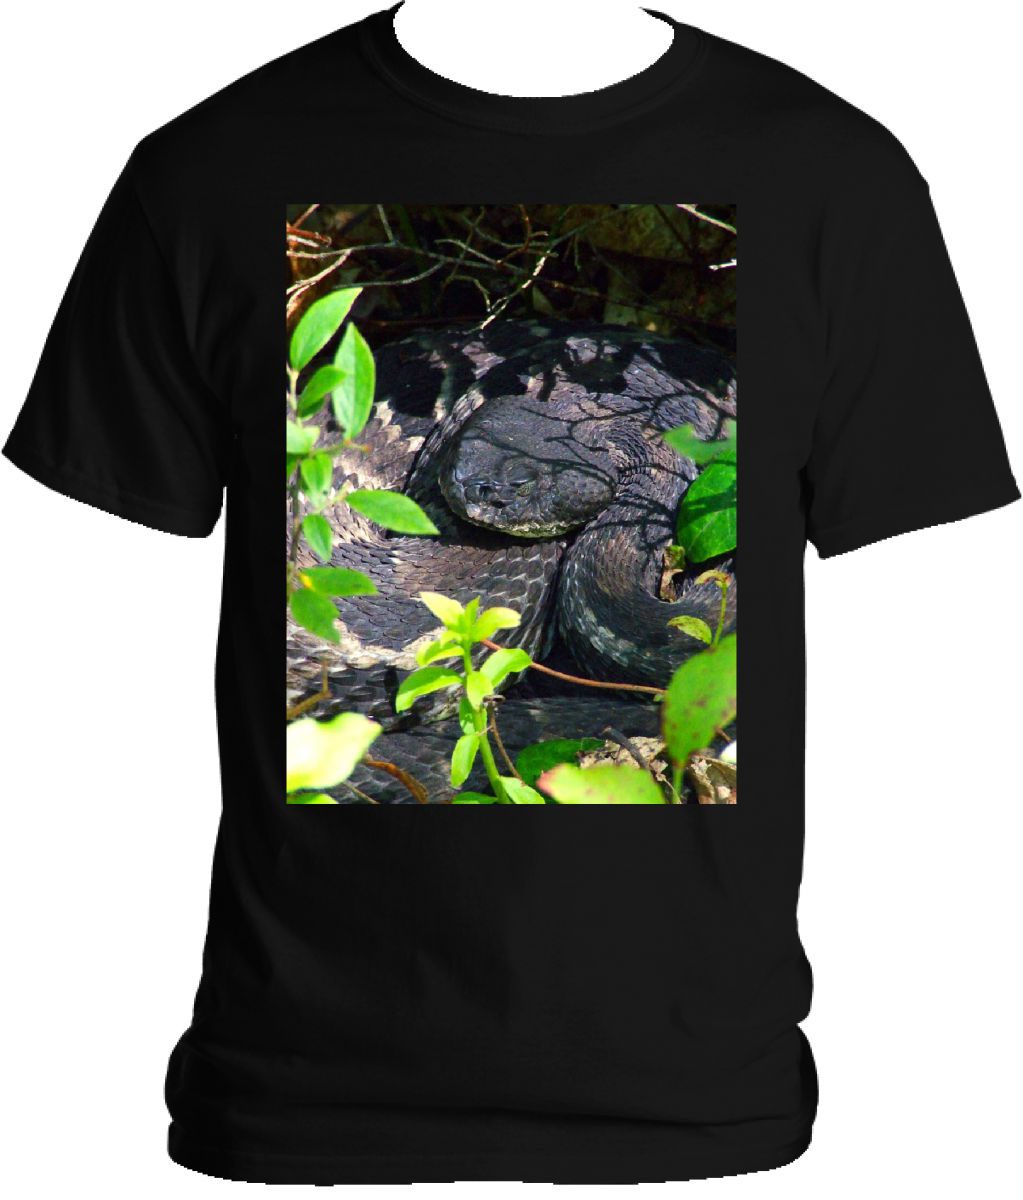 Rattlesnake T-shirt 2